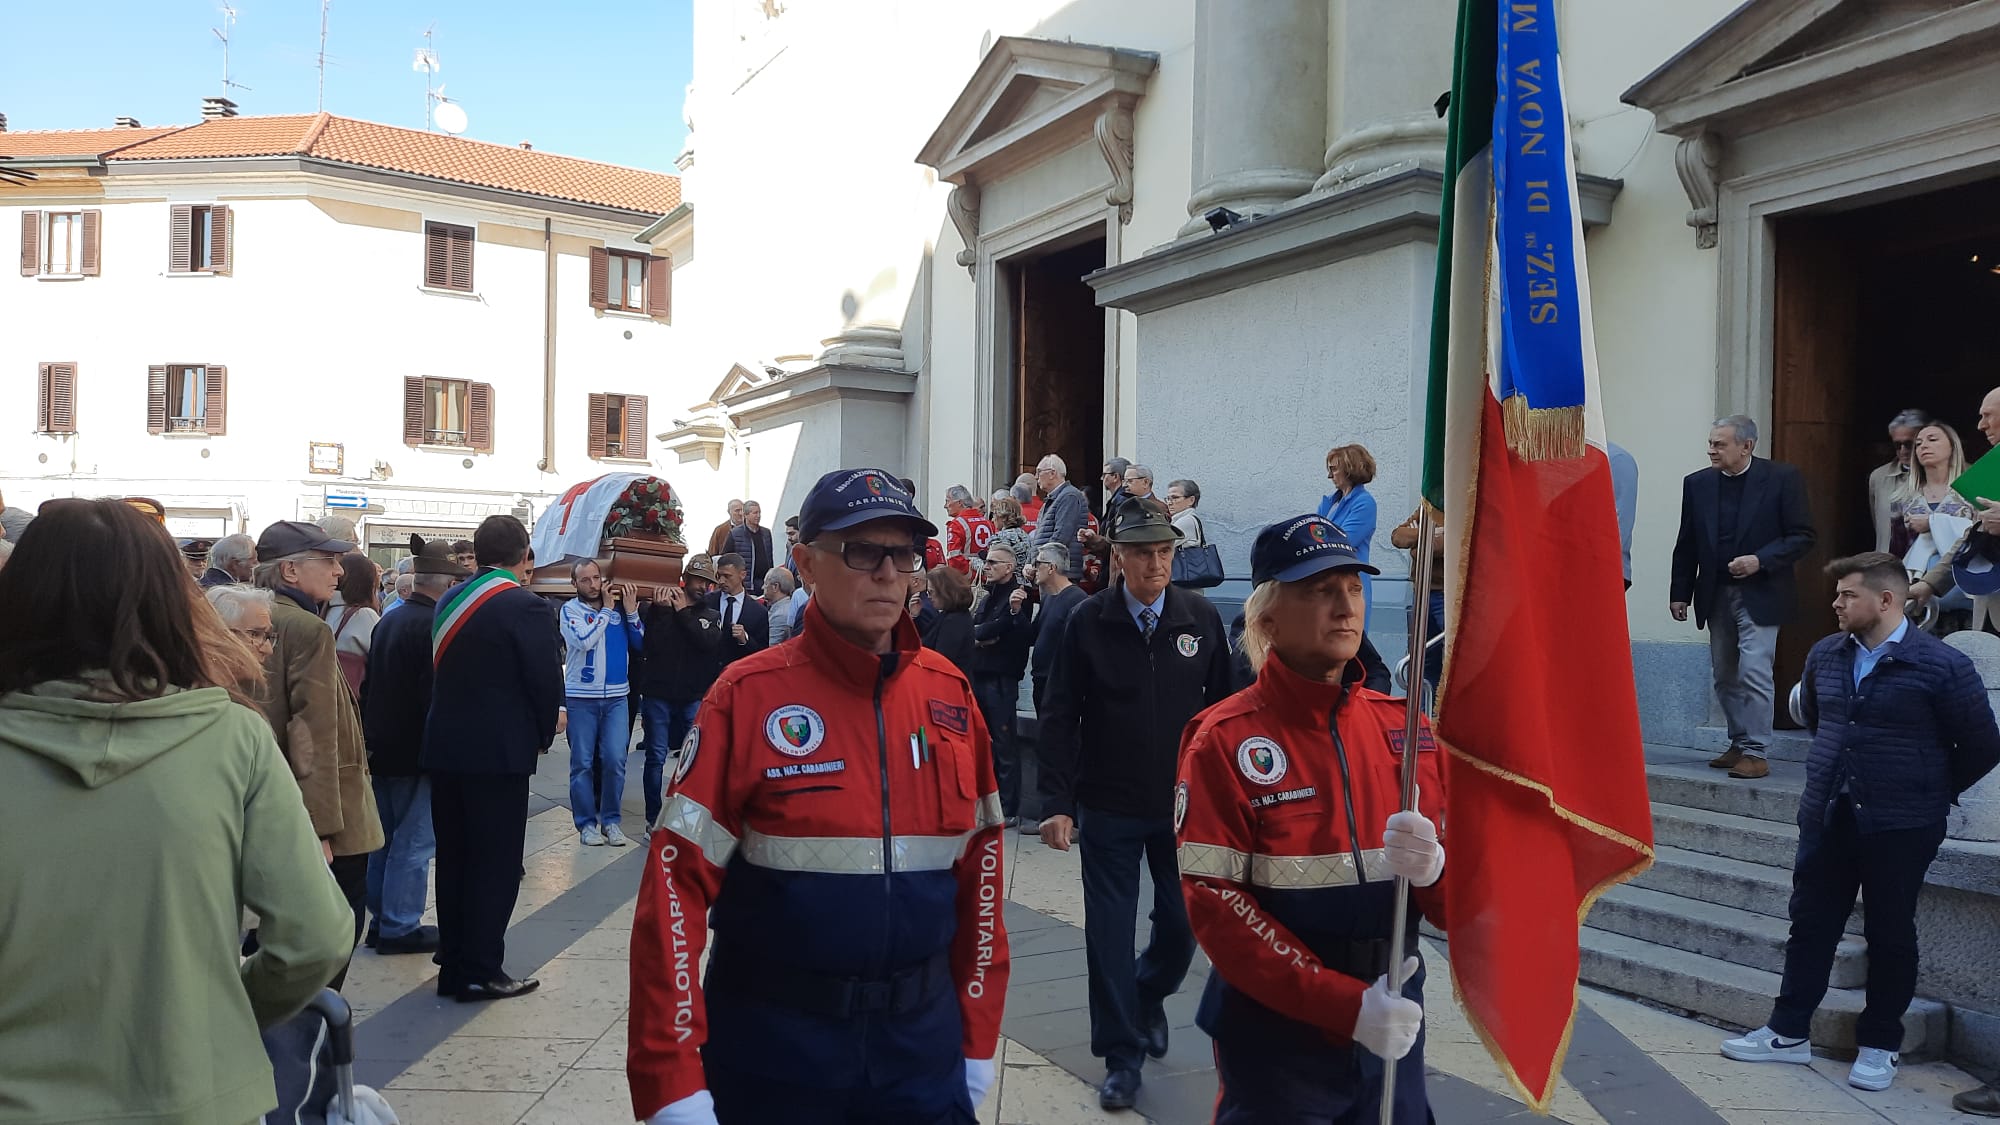 Nova milanese funerale Renato Caimi